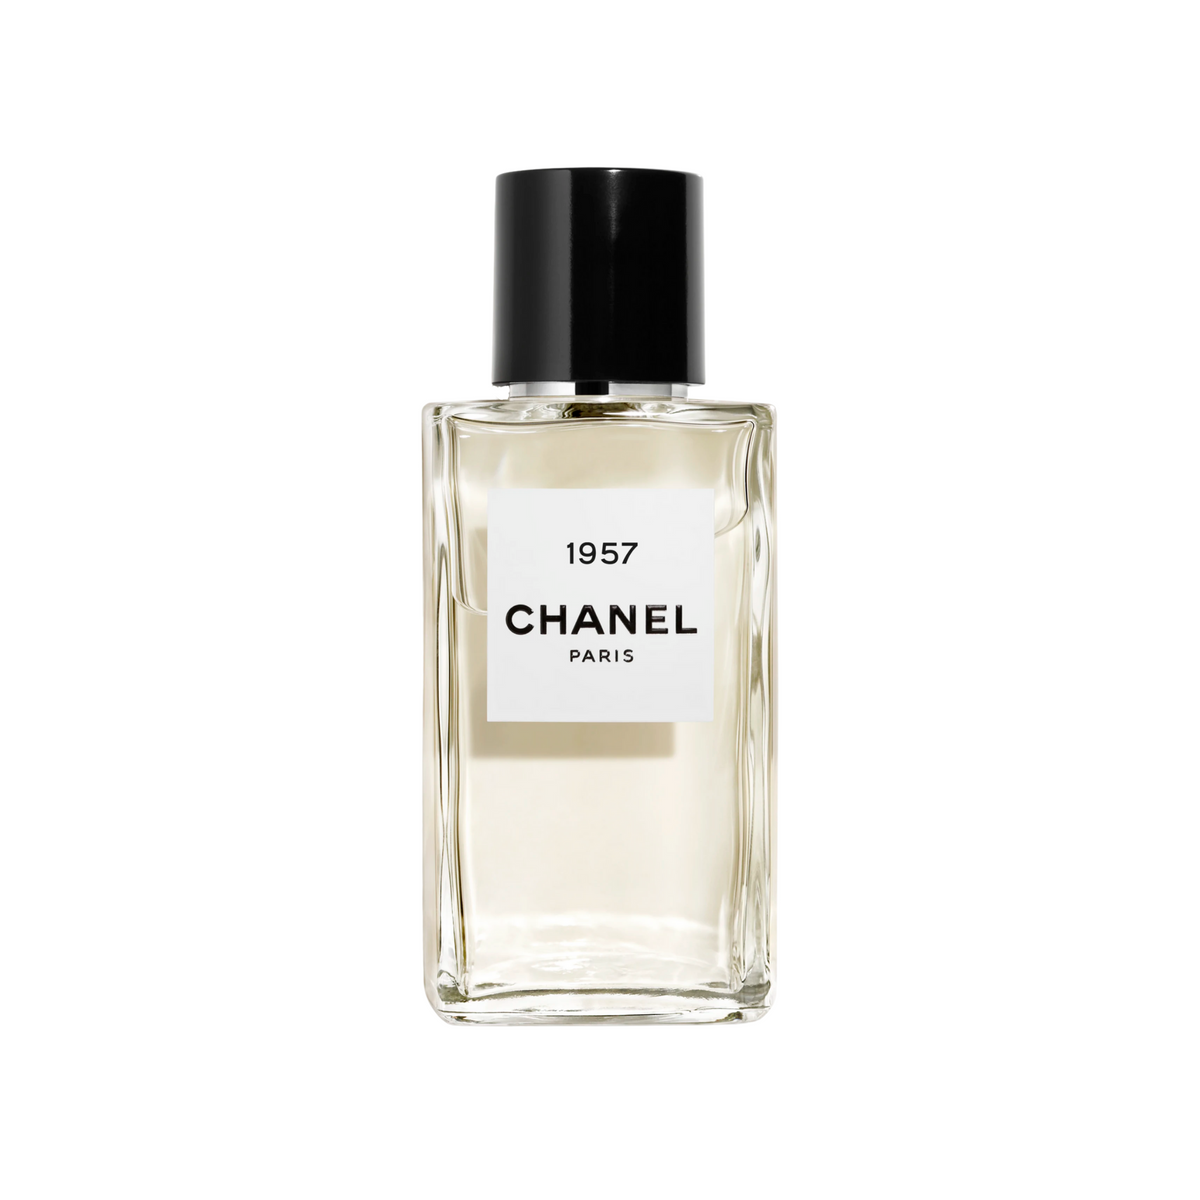 Chanel Paris 1957 Eau de Parfum